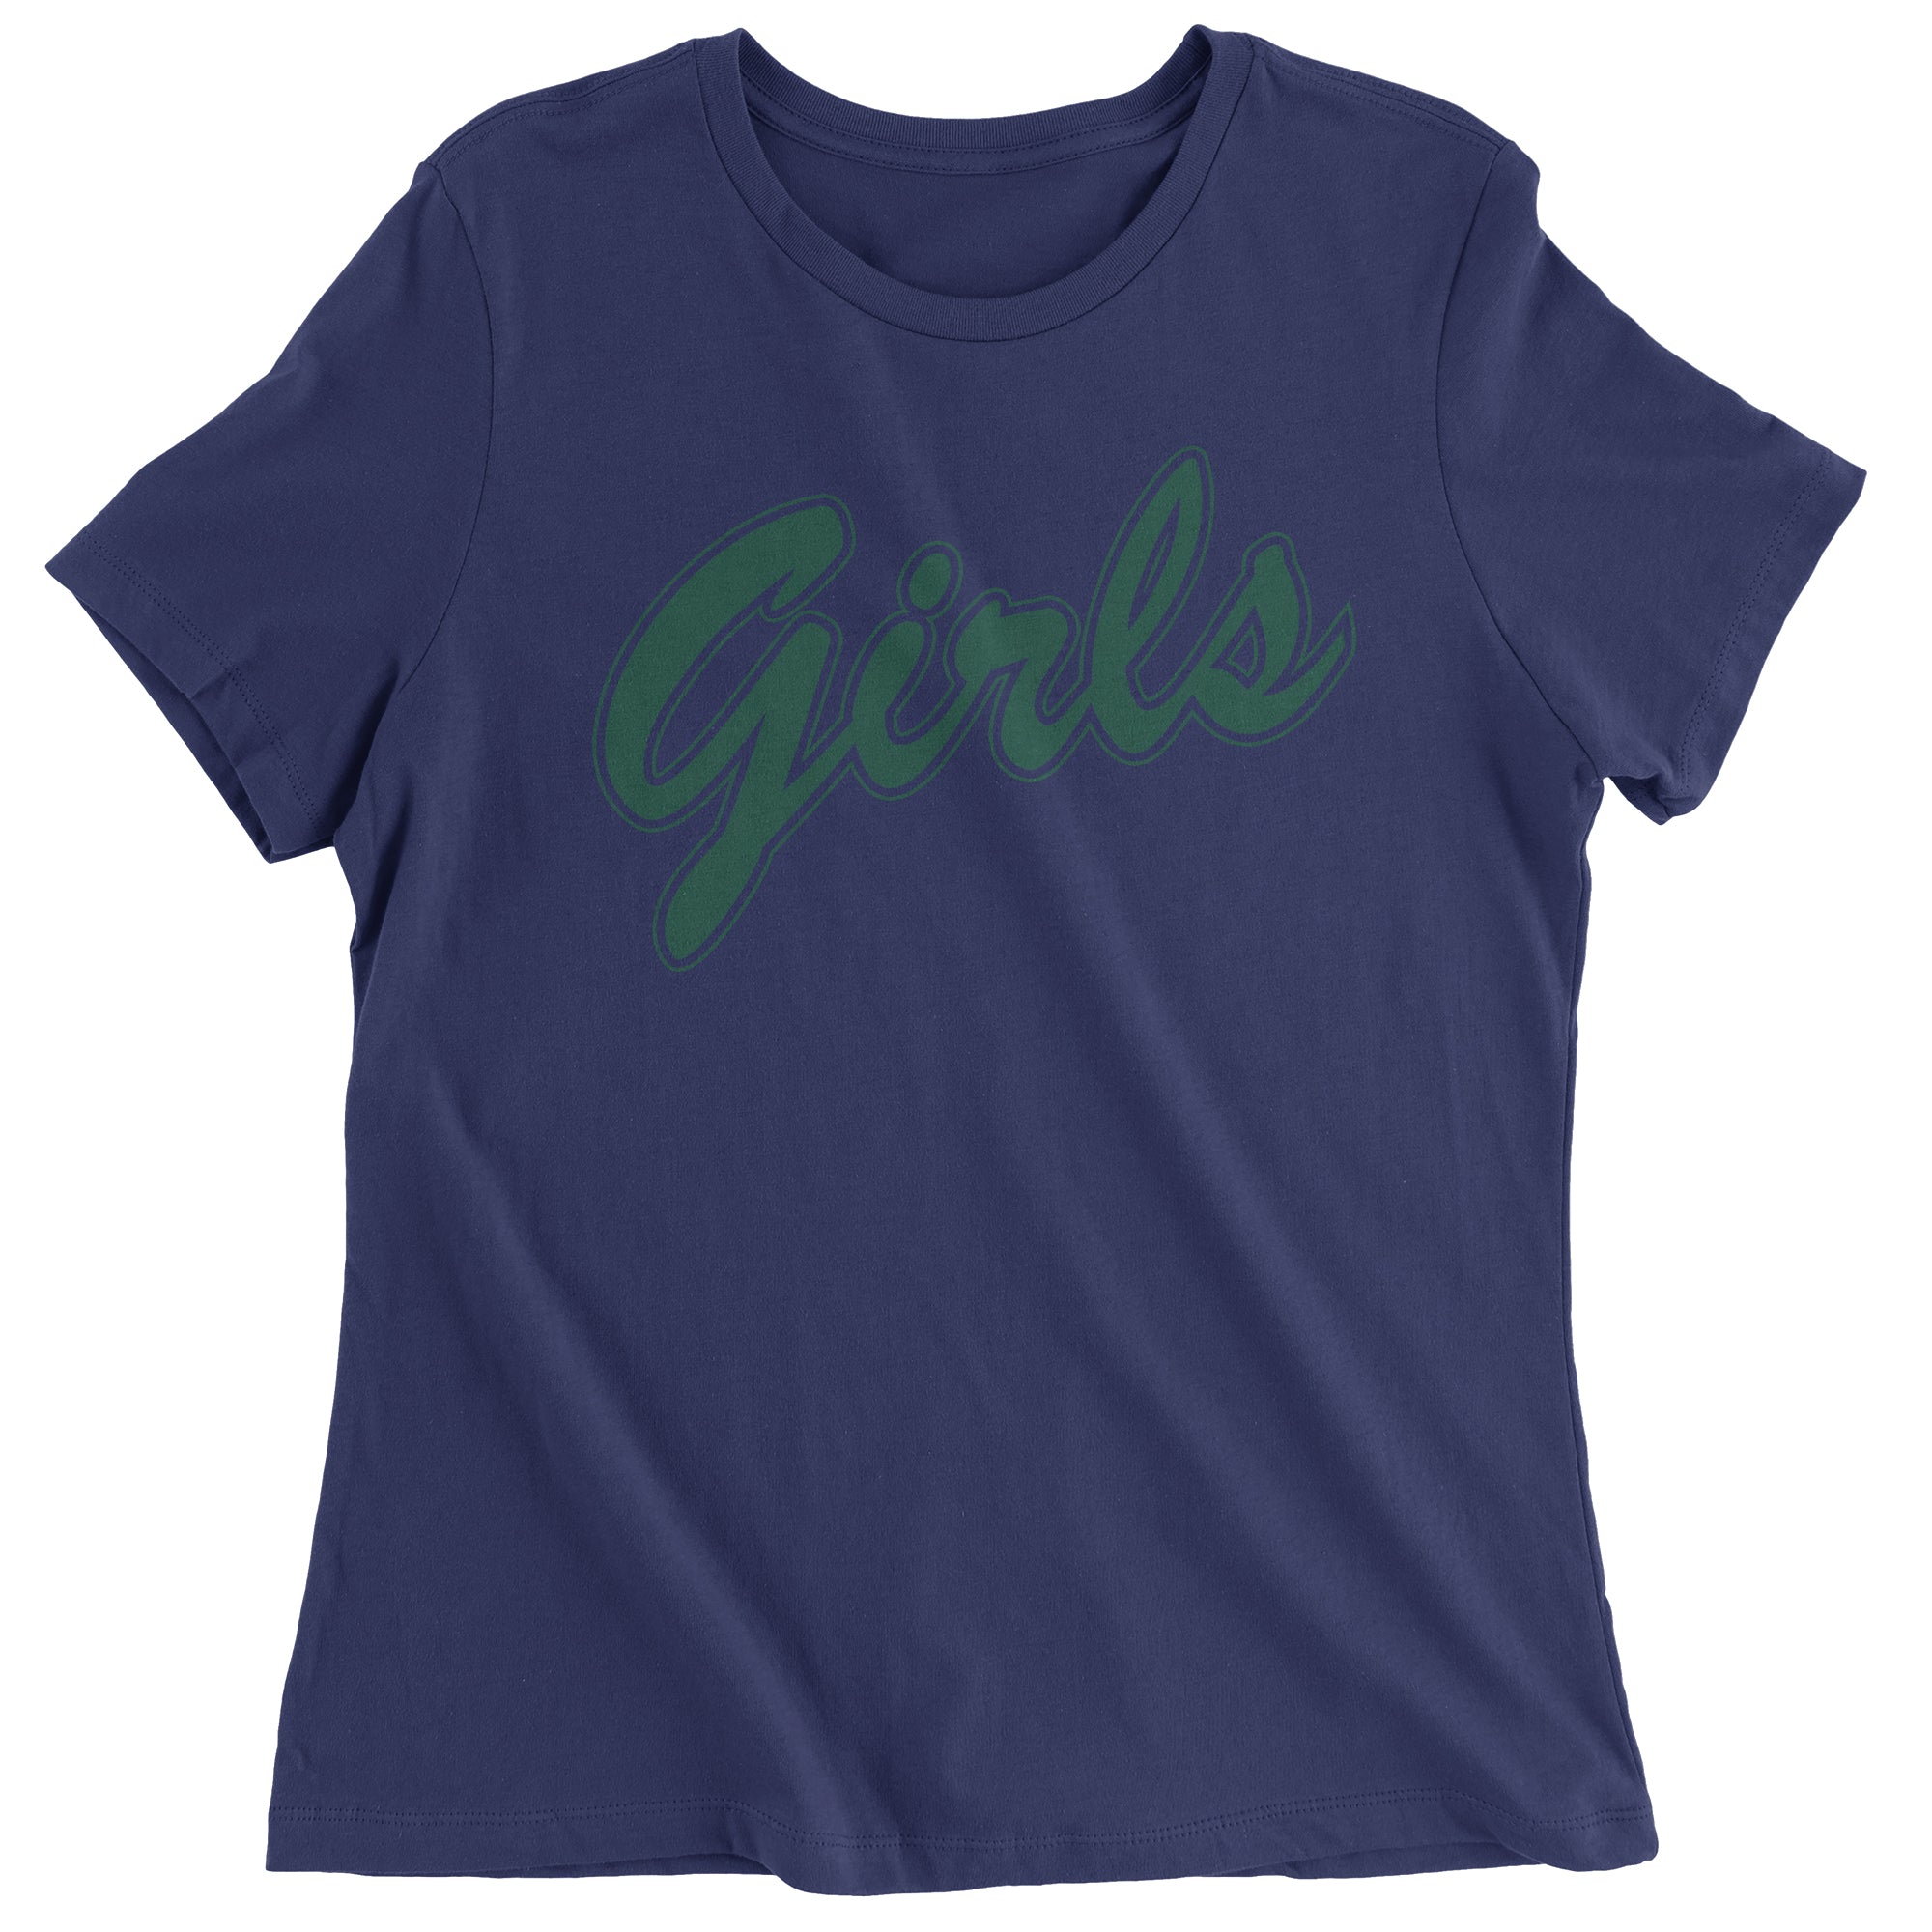 Girls Shirt From Friends (Green) Women's T-Shirt